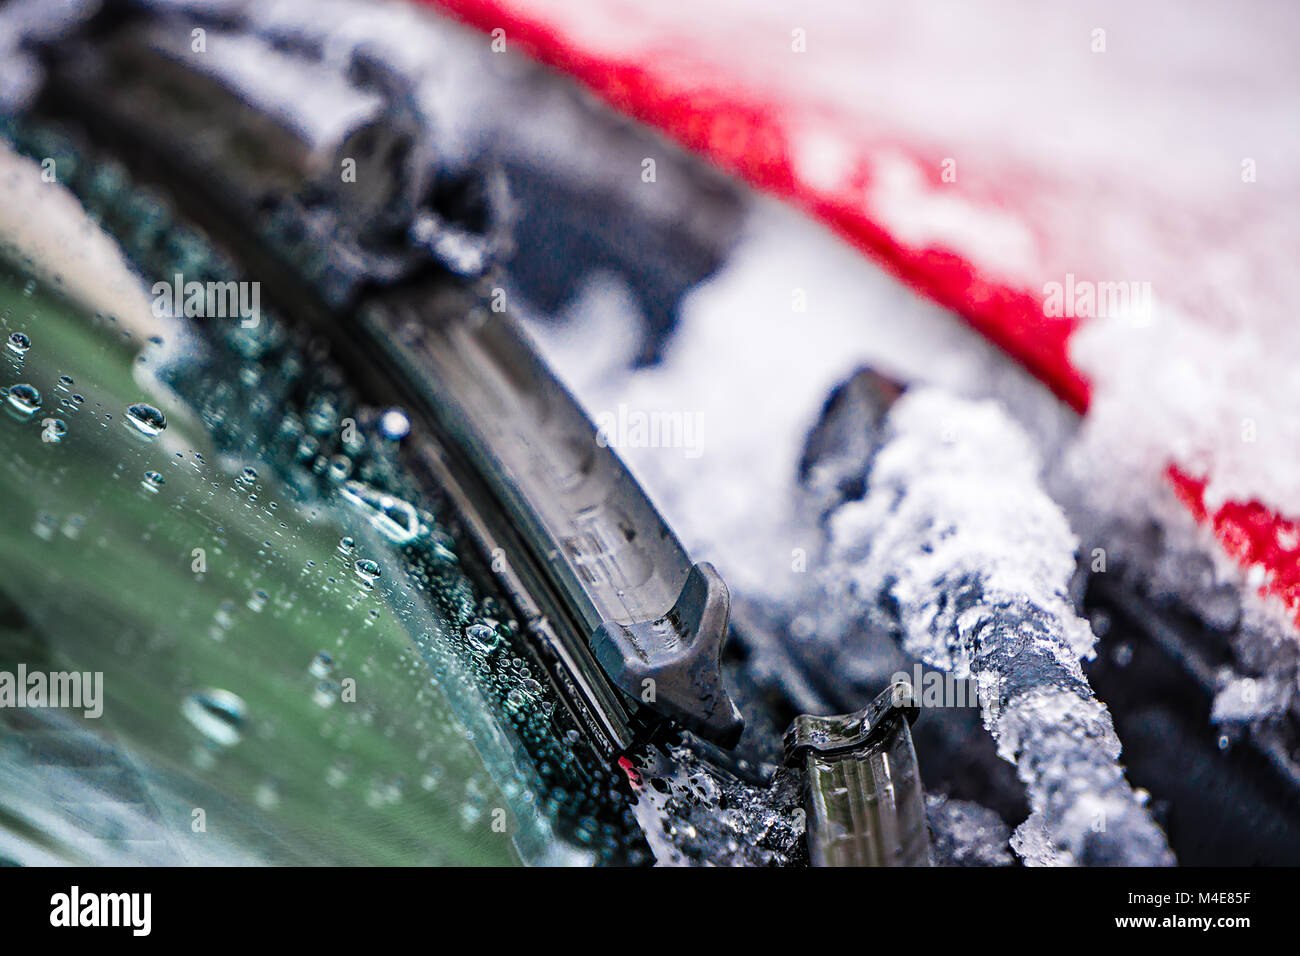 Schnee und Eis bedeckten Scheibenwischer Stockfotografie - Alamy